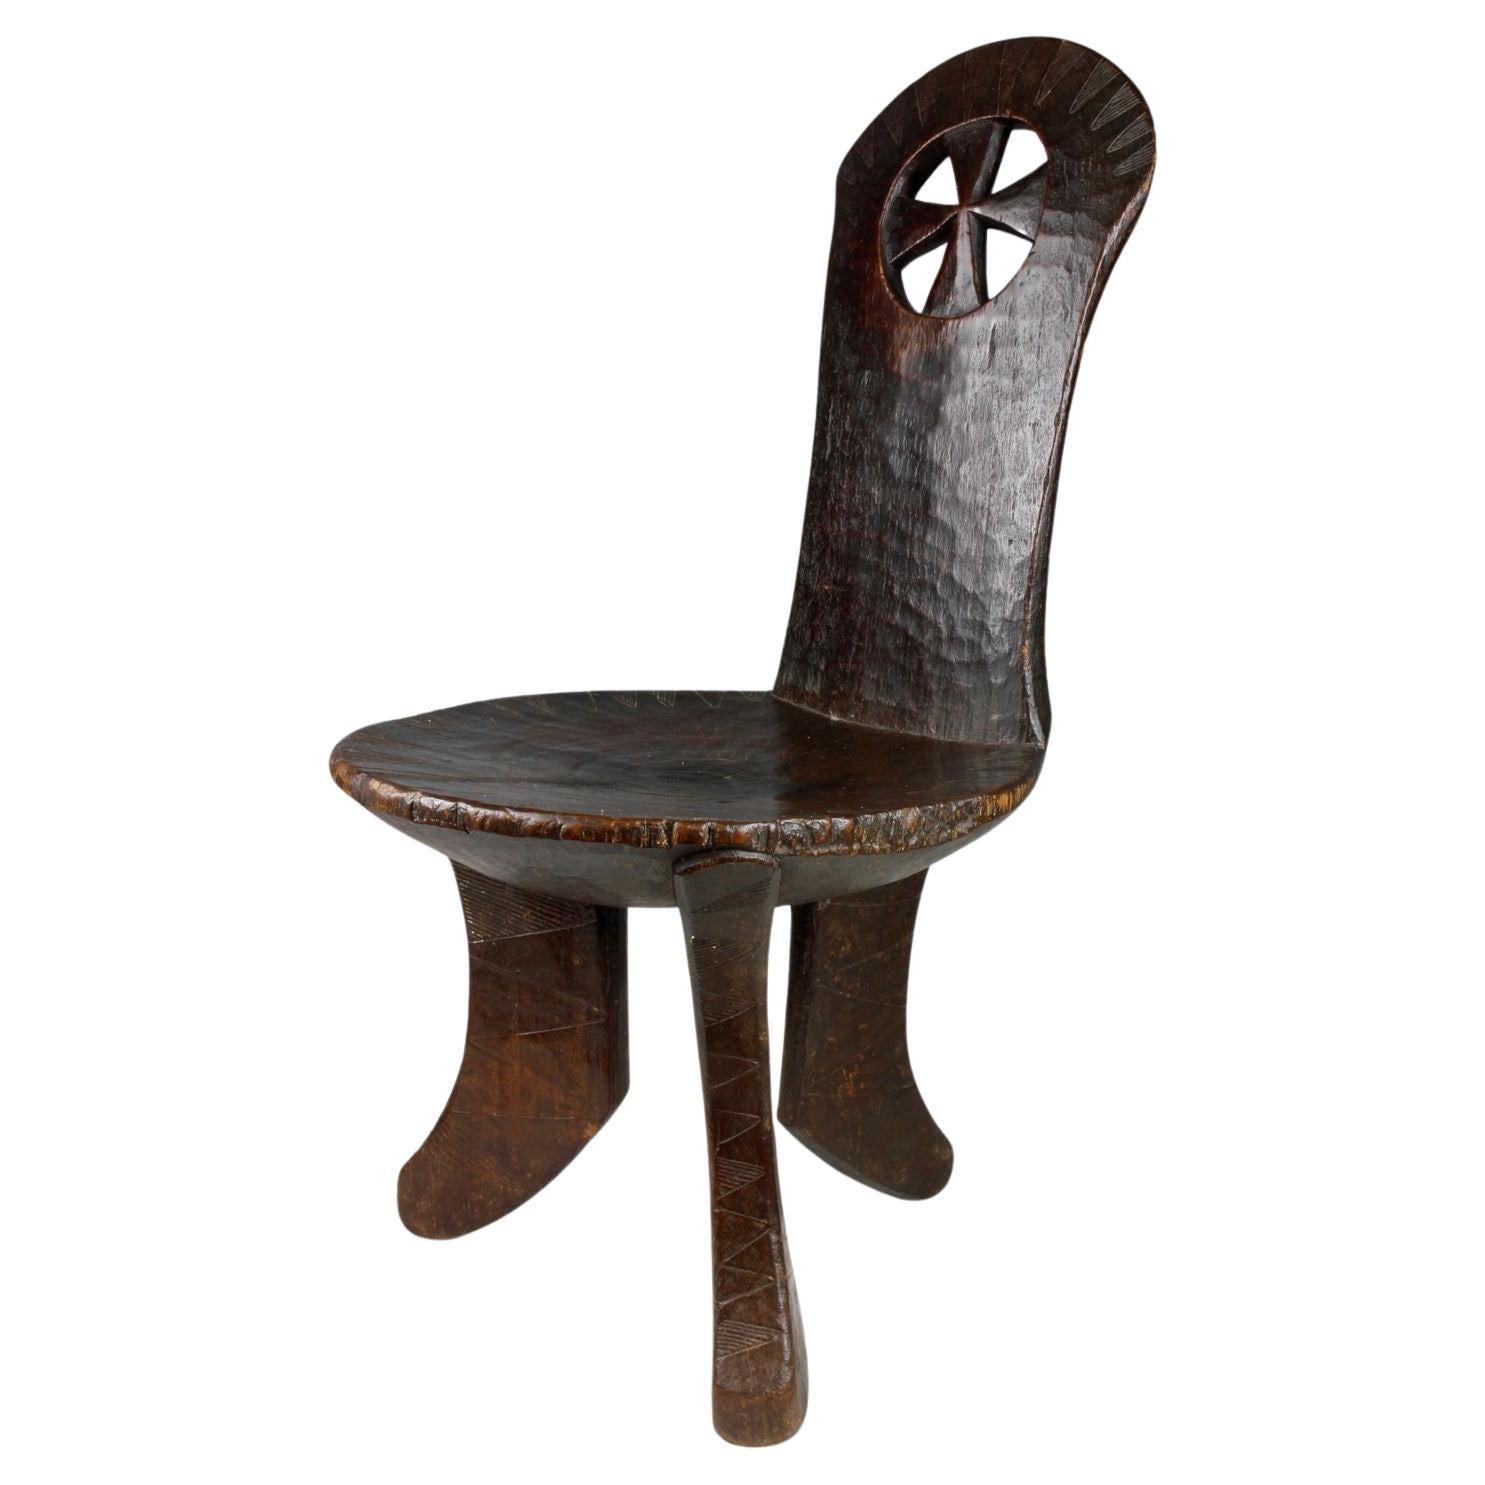 Äthiopischer Stuhl mit hoher Rückenlehne aus dem späten 19./ frühen 20. Jahrhundert